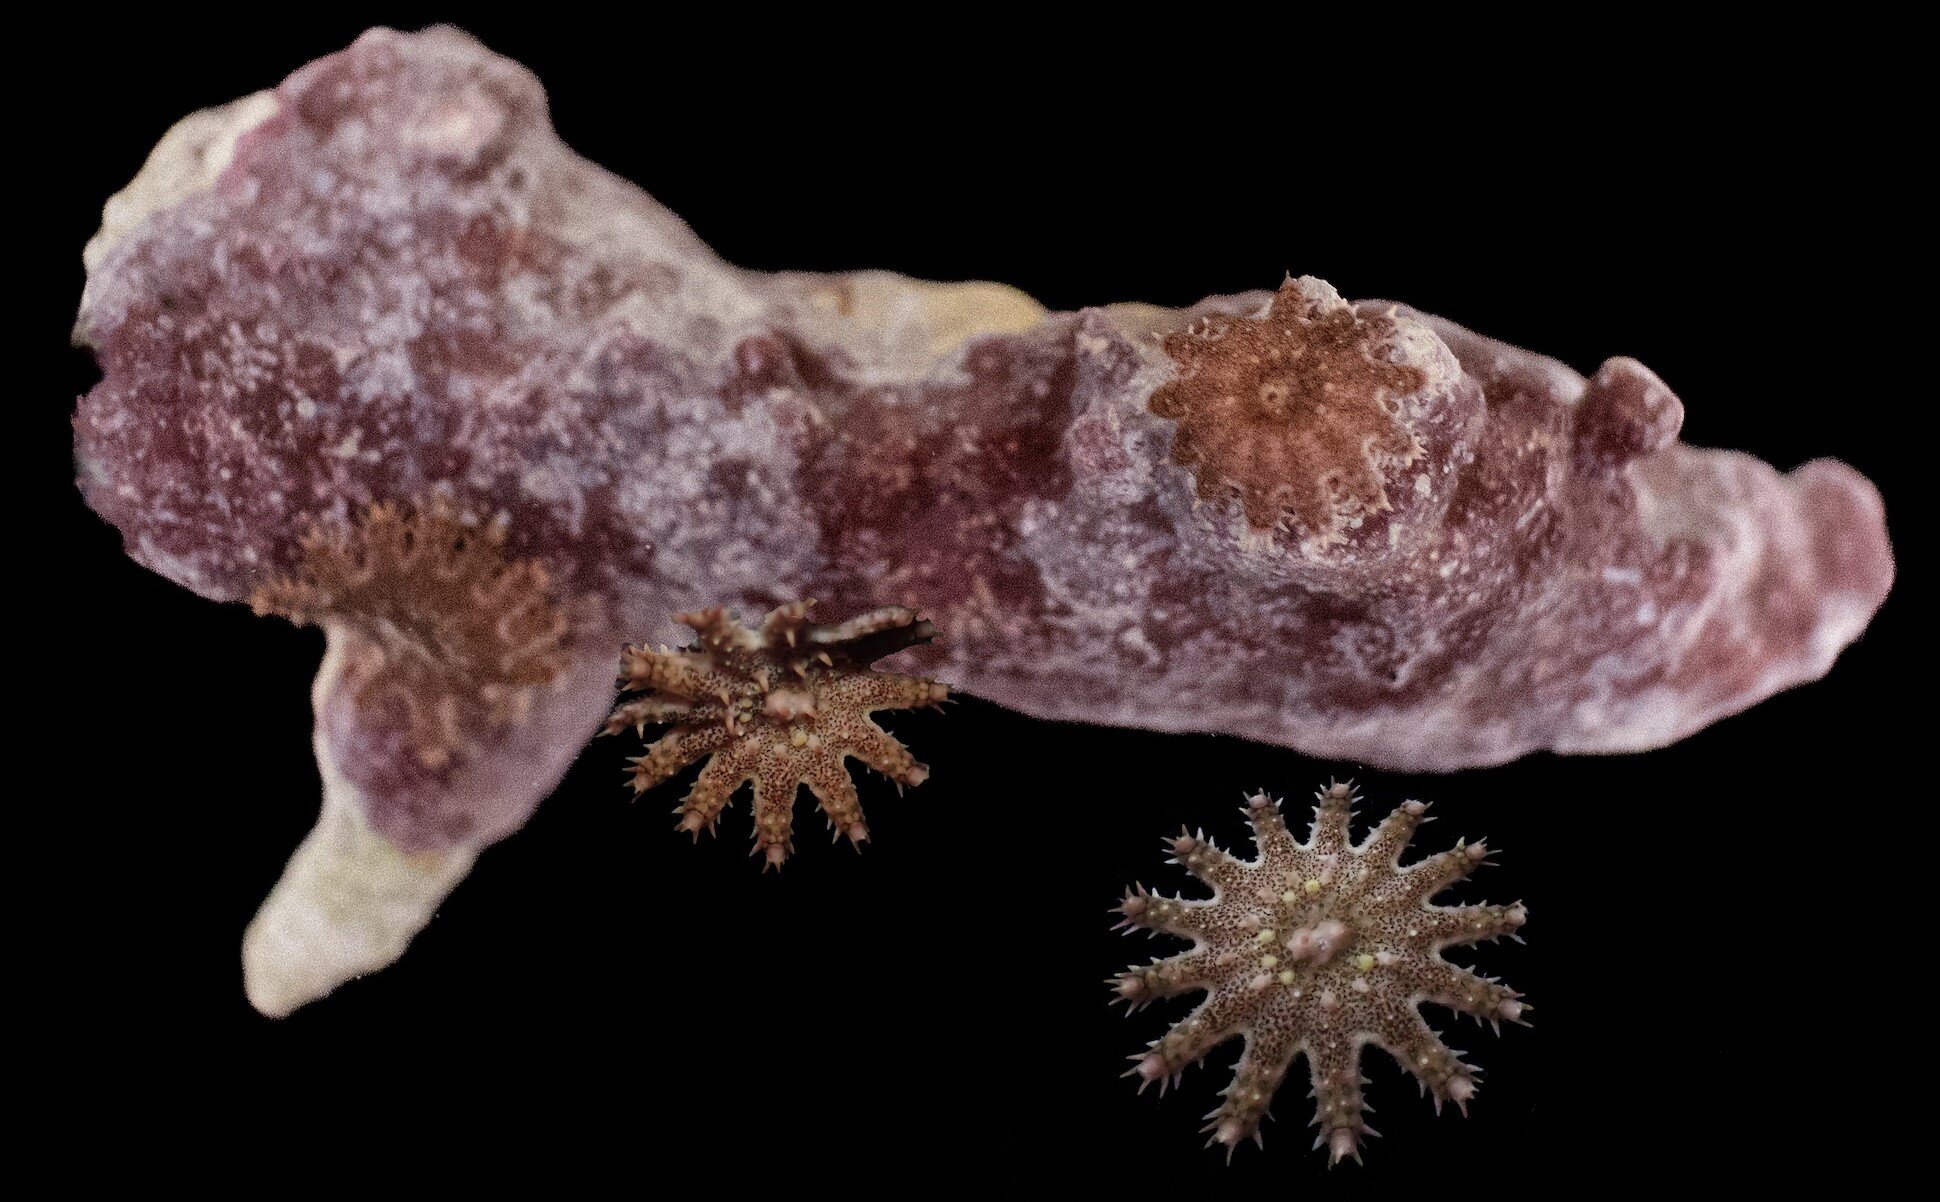 Drapieżnik żywiący się koralowcami przeżywa blaknięcie koralowców i żeruje na ocalałych